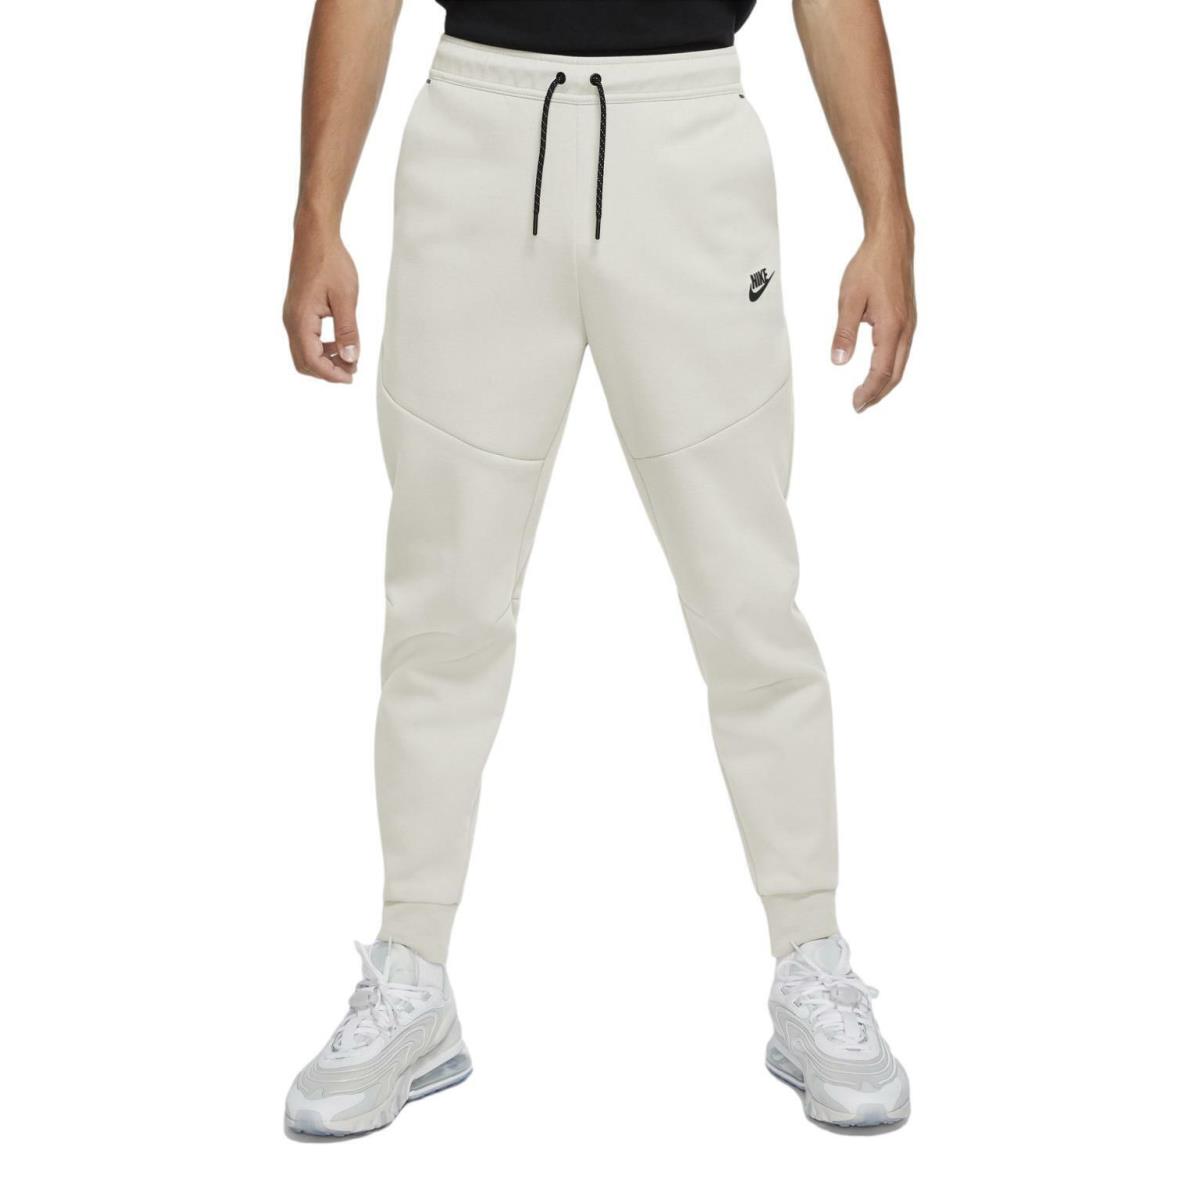 Nike Sportswear Men`s Tech Fleece Joggers Pants Light Bone CU4495-072 - Light Bone/Black